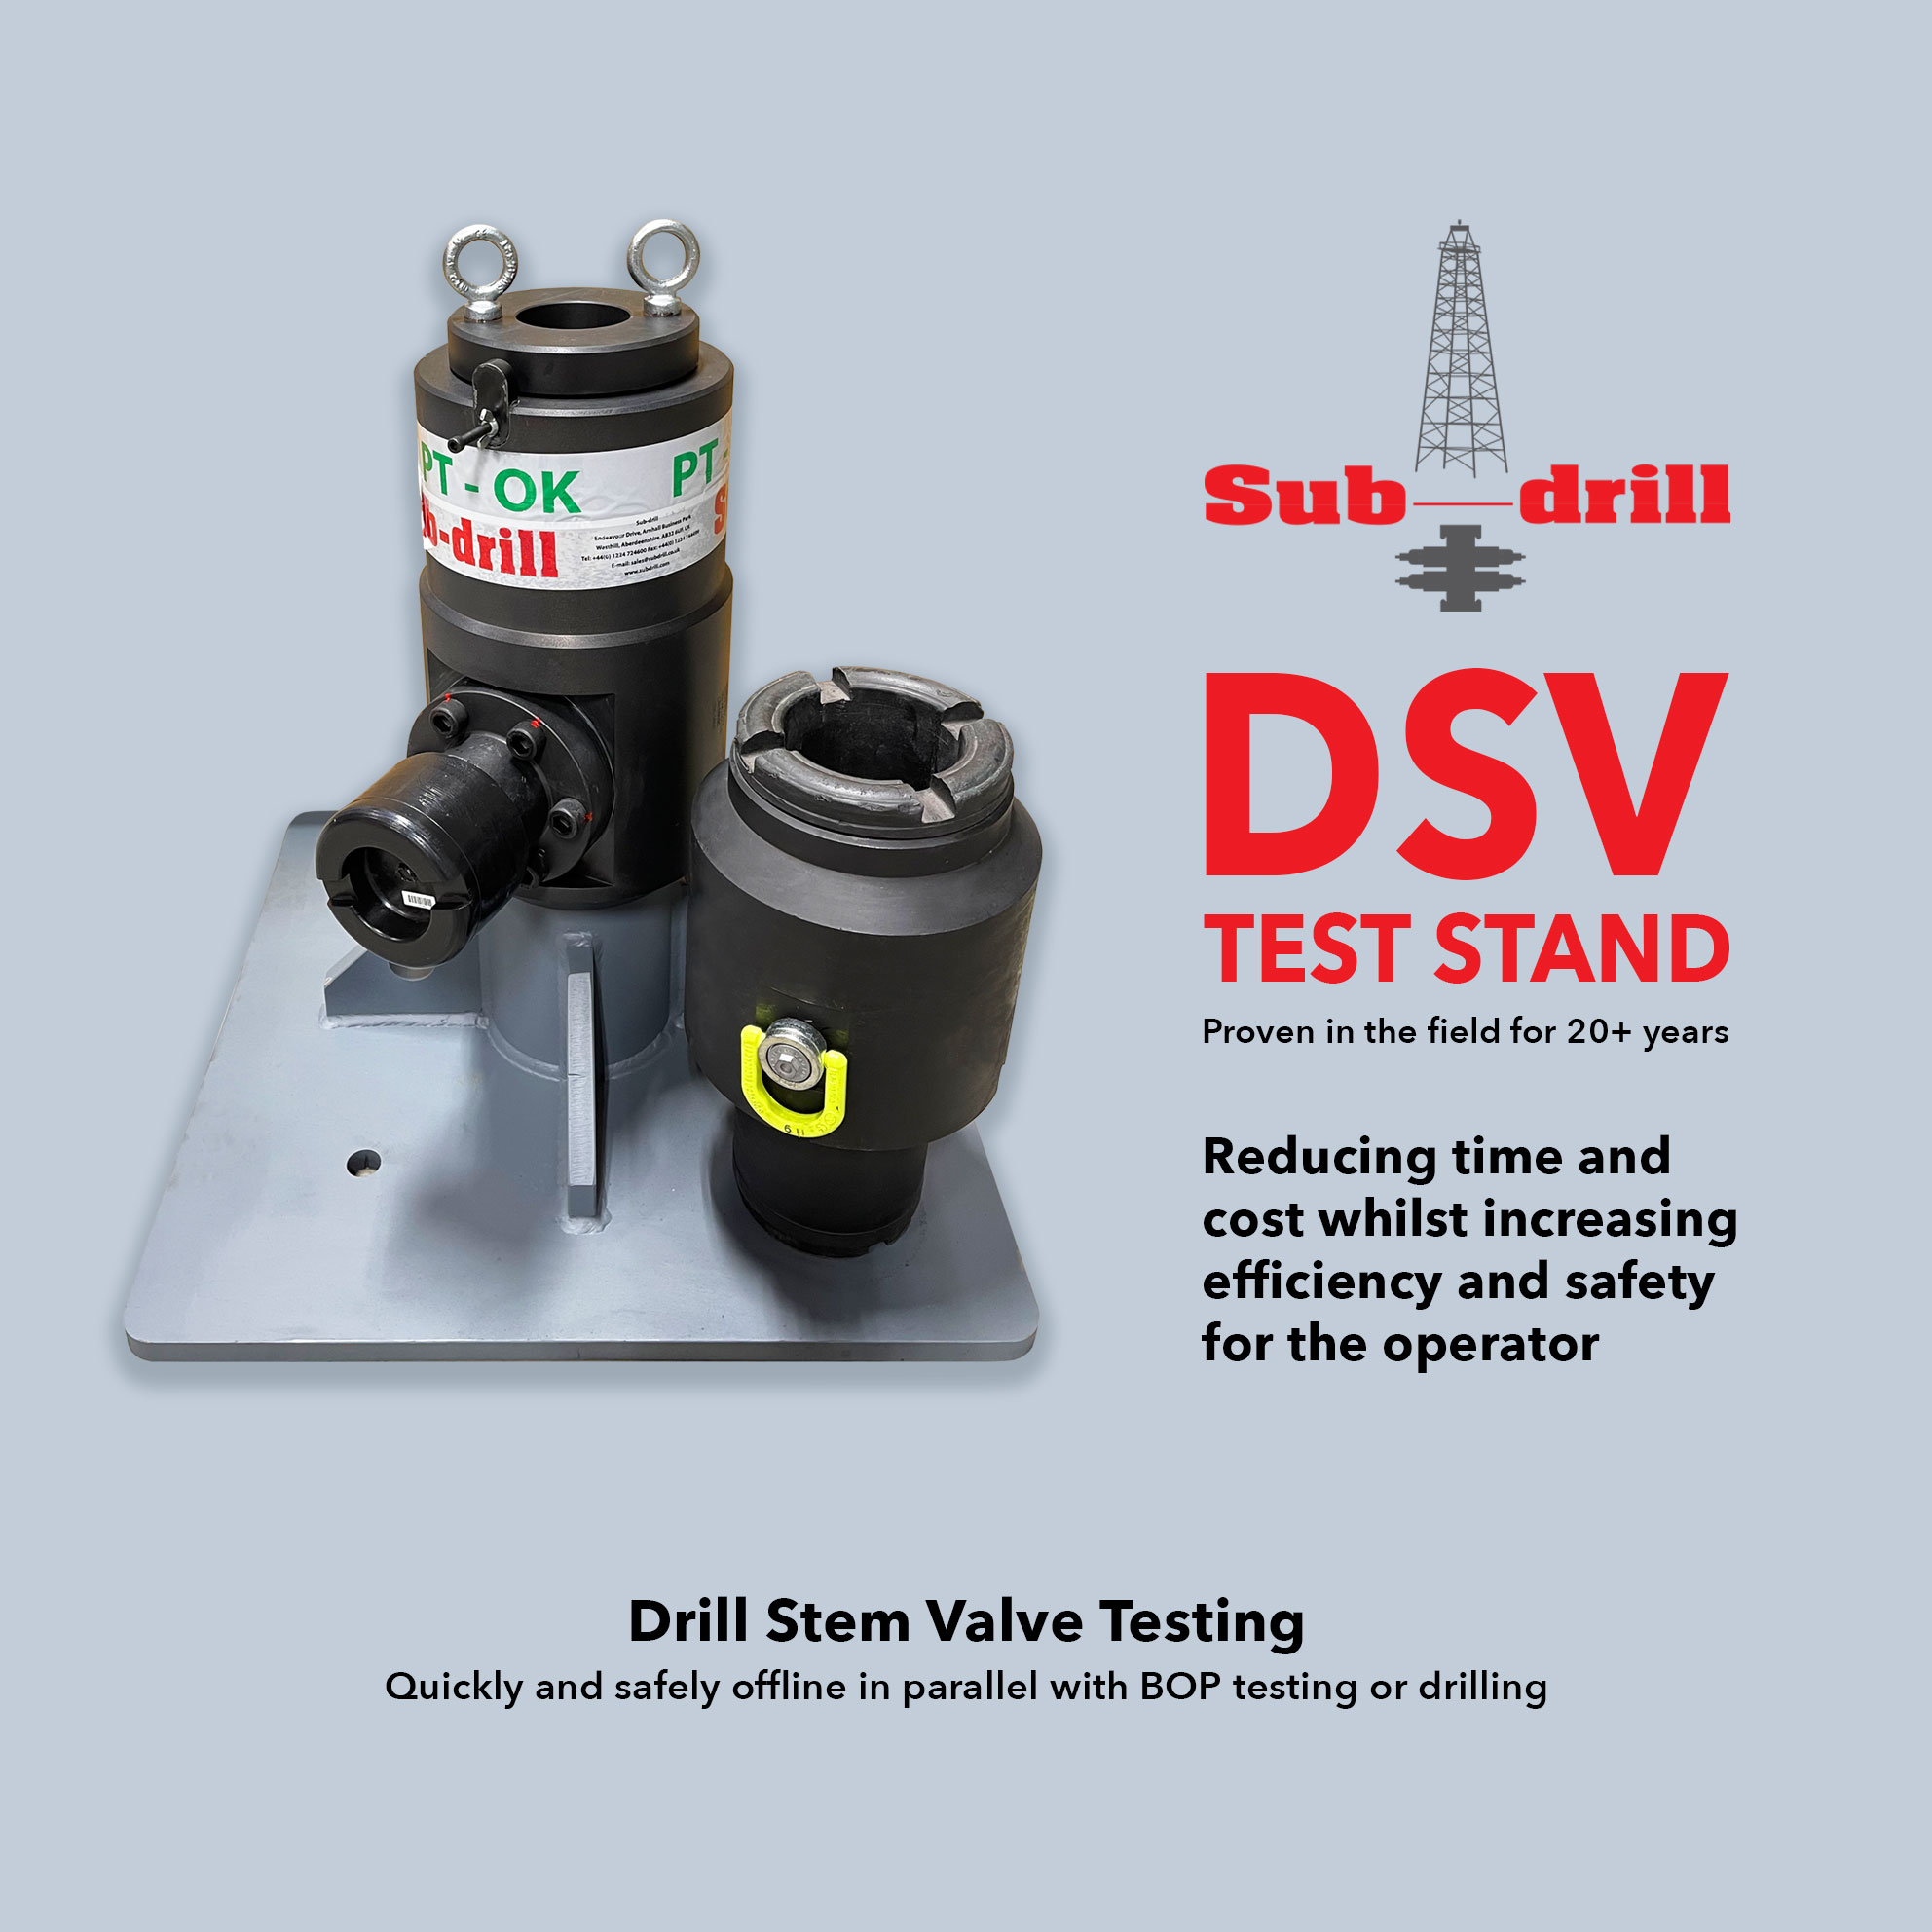 DSV Drill Stem Valve Tset Stand